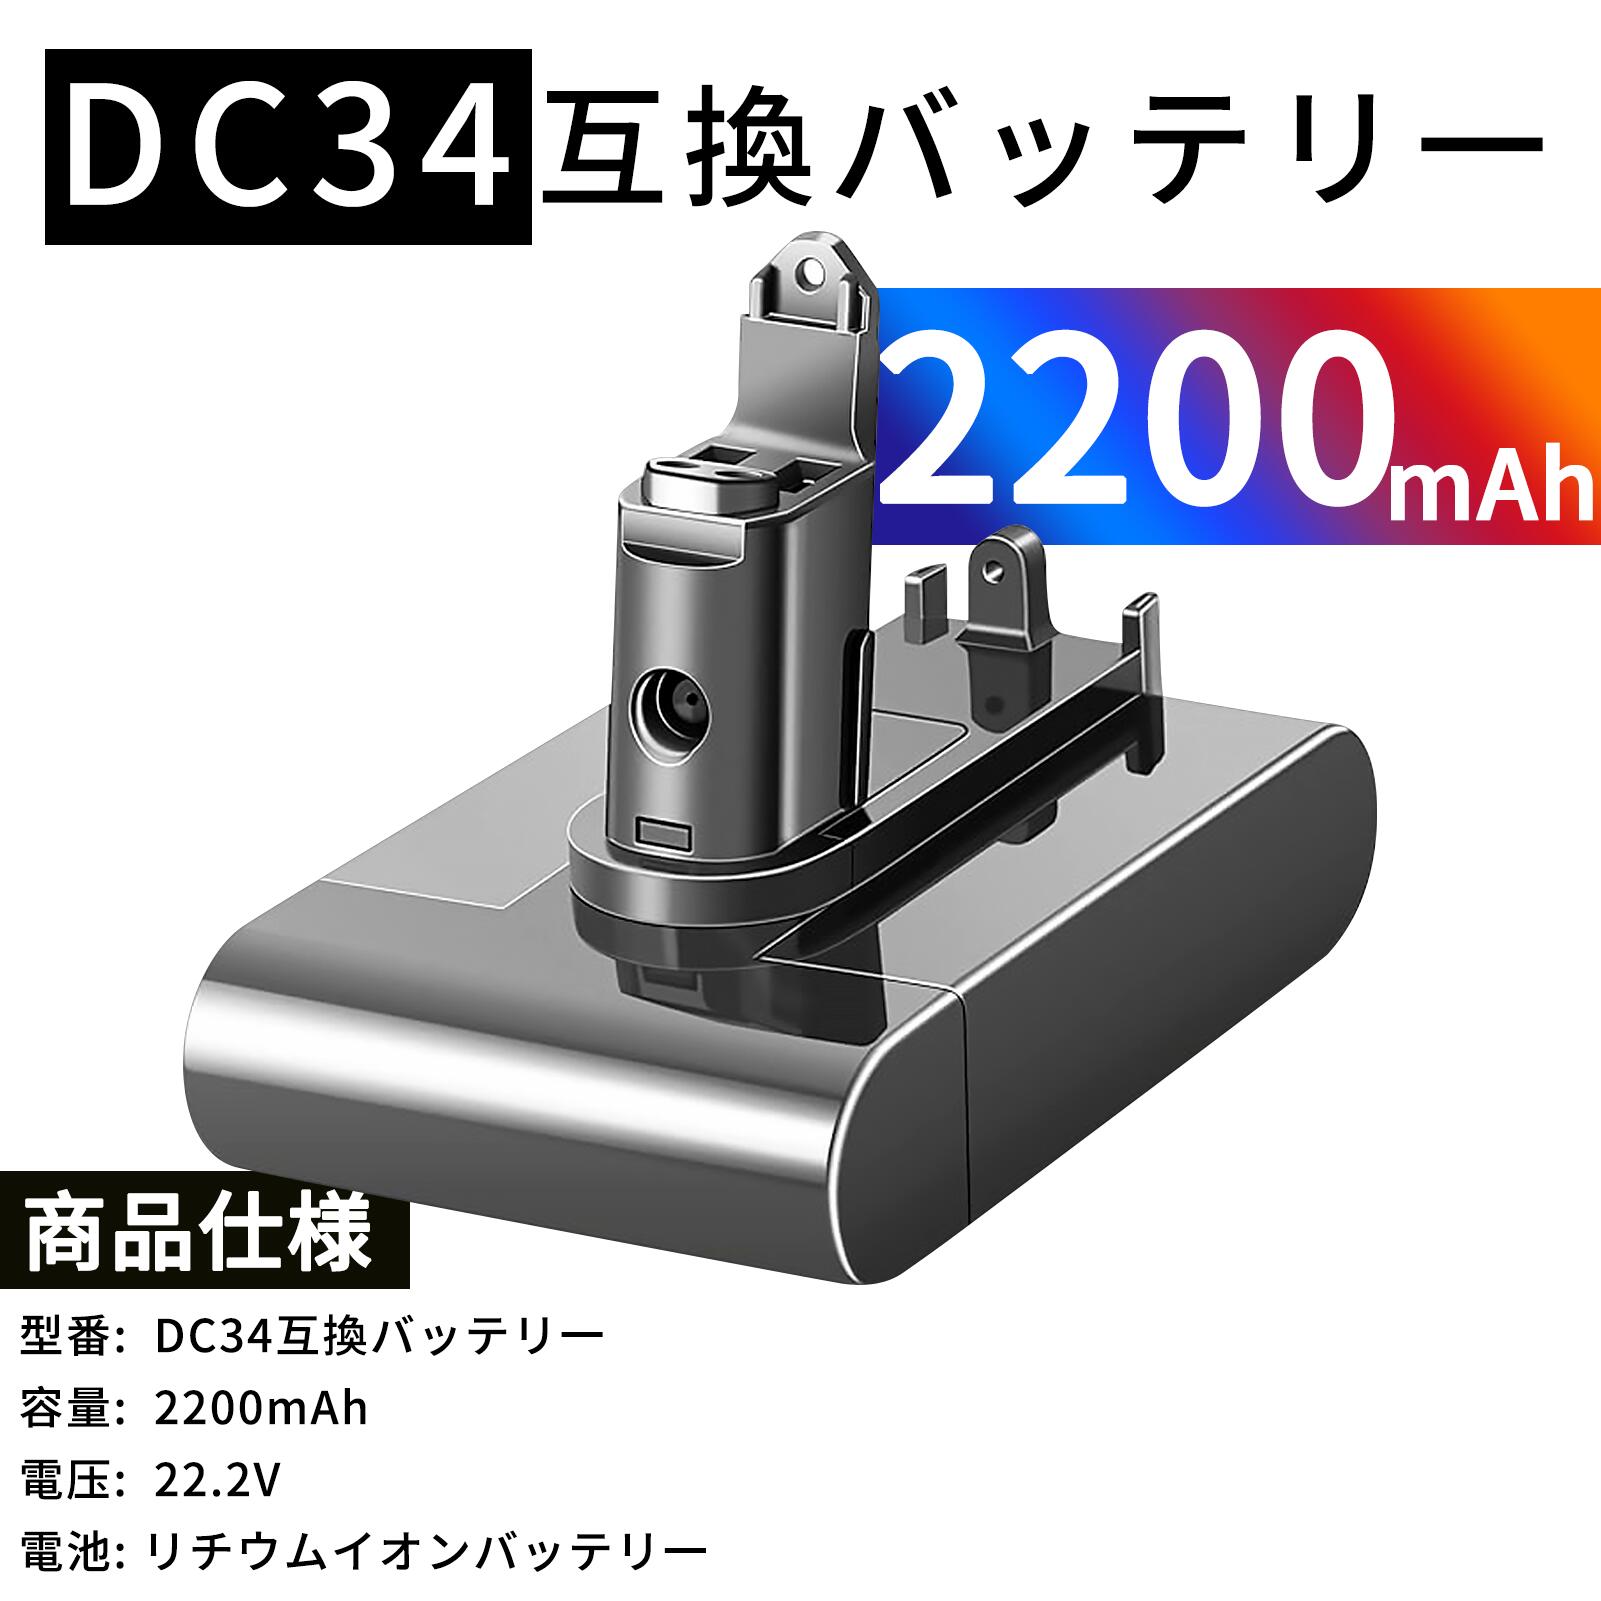 【新品】 GS-yson DC34 22.2V 2200mAh 互換バッテリー GS-yson DC34 バッテリー対応 掃除機互換バッテリー ネジ式 バ…